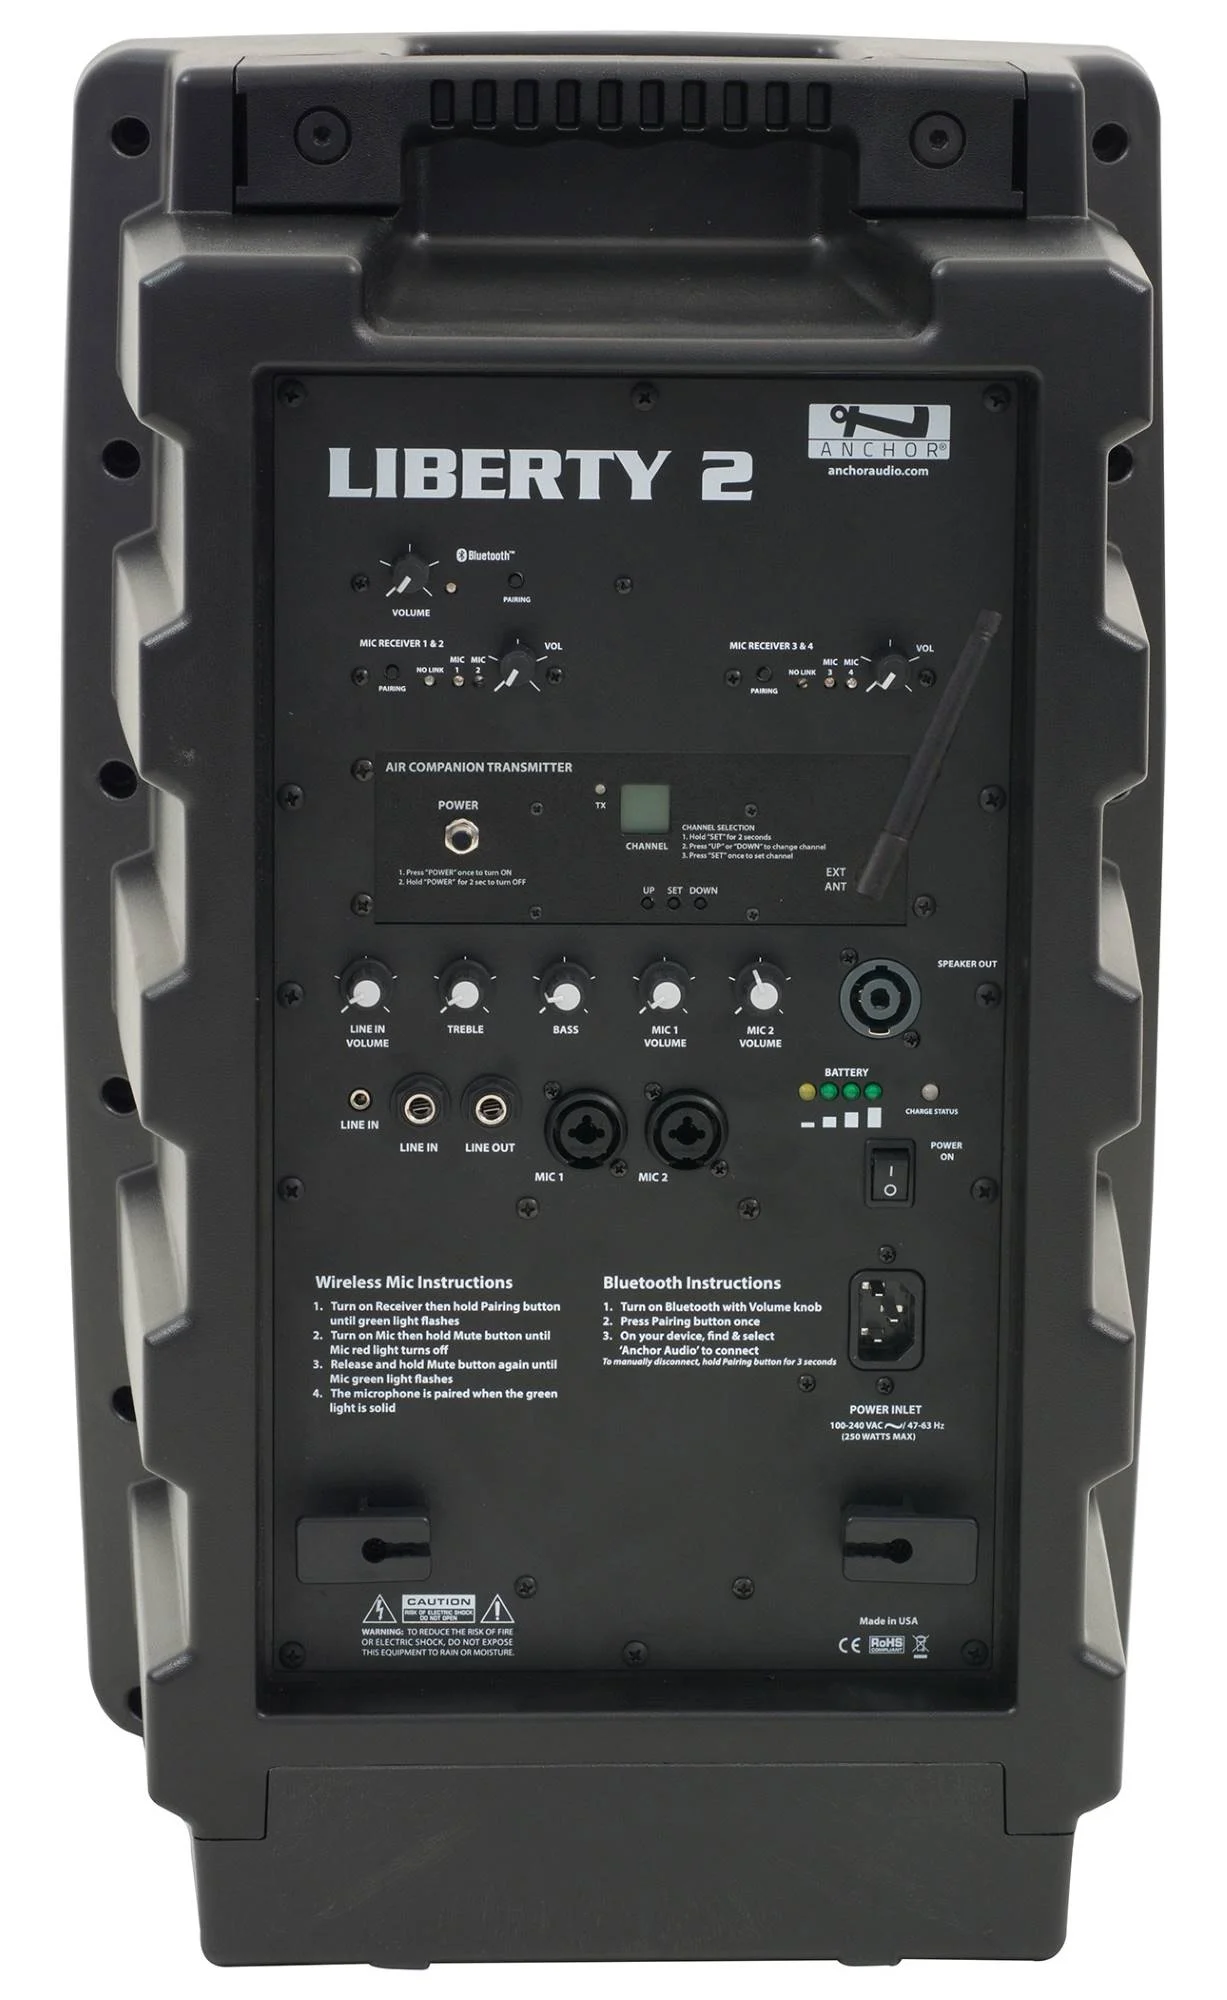 Anchor LIB-DP4-AIR Liberty 2 Deluxe Package - LIB2-XU4, LIB2-AIR, 2x SS-550, 4x Wireless Mic